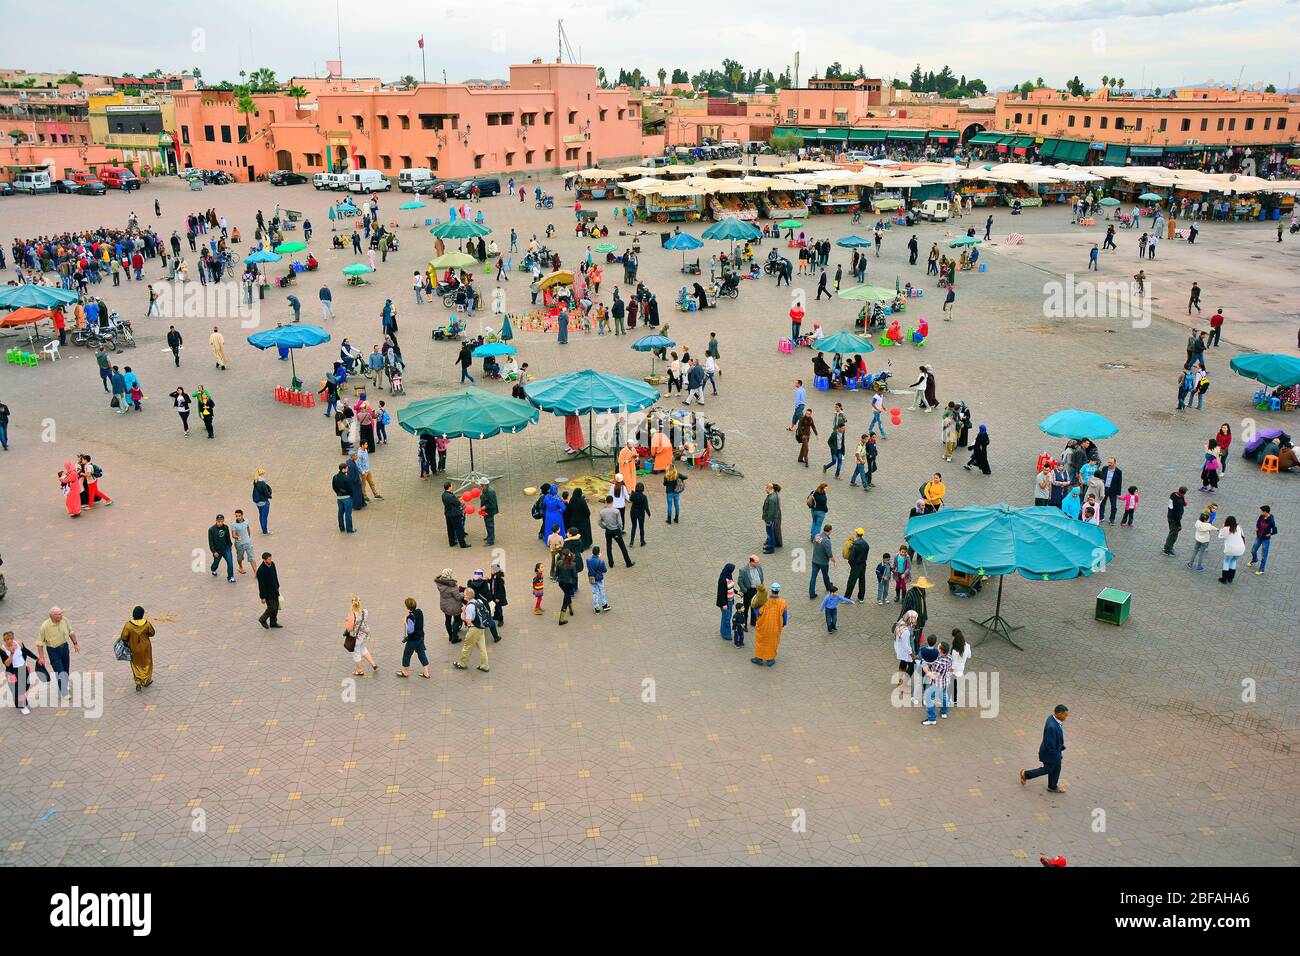 Marrakesch, Marokko - 22. November 2014: Menschenmenge von nicht identifizierten Menschen, Straßenhändlern, Künstlern, Geschäften und Kiosken auf Djemaa el-Fna, UNESCO-Welterbe Stockfoto